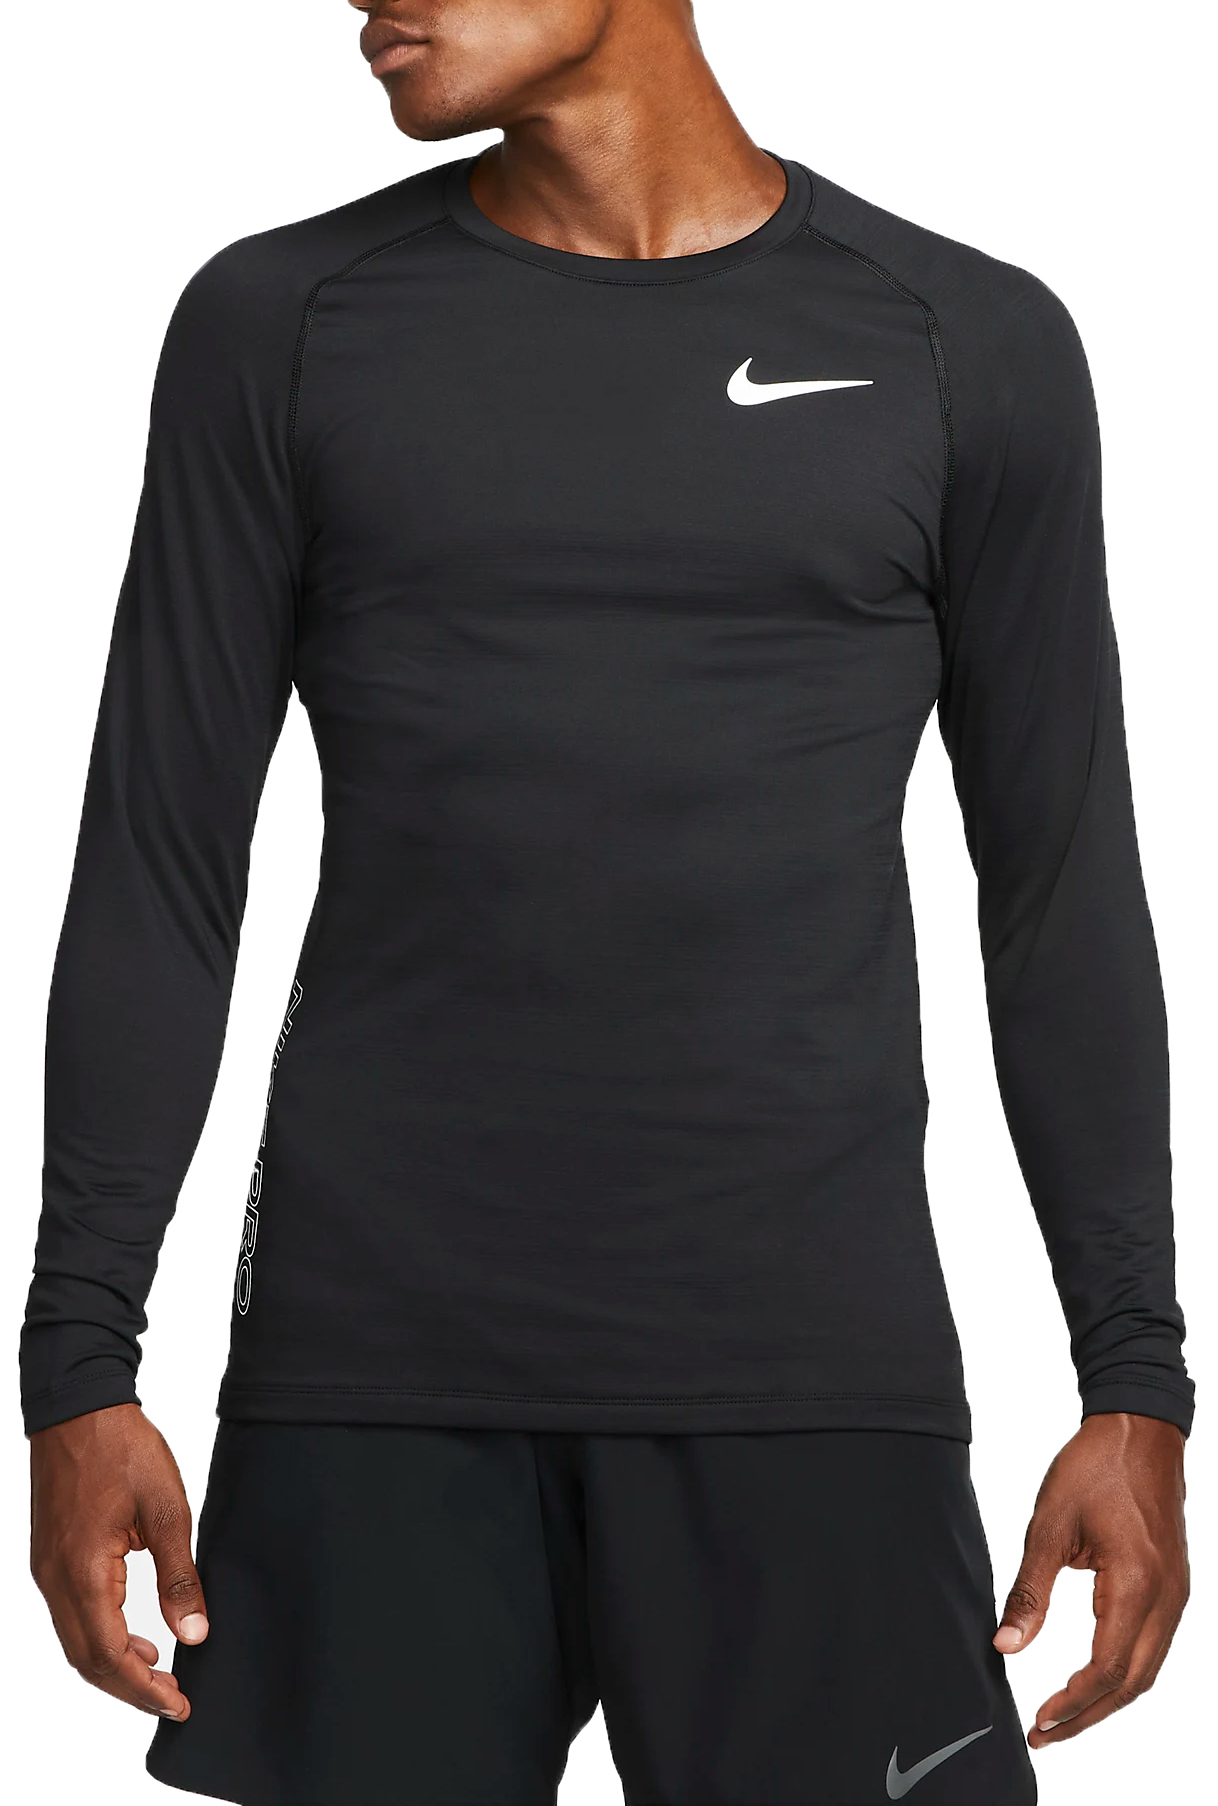 Pánské triko s dlouhým rukávem Nike Pro